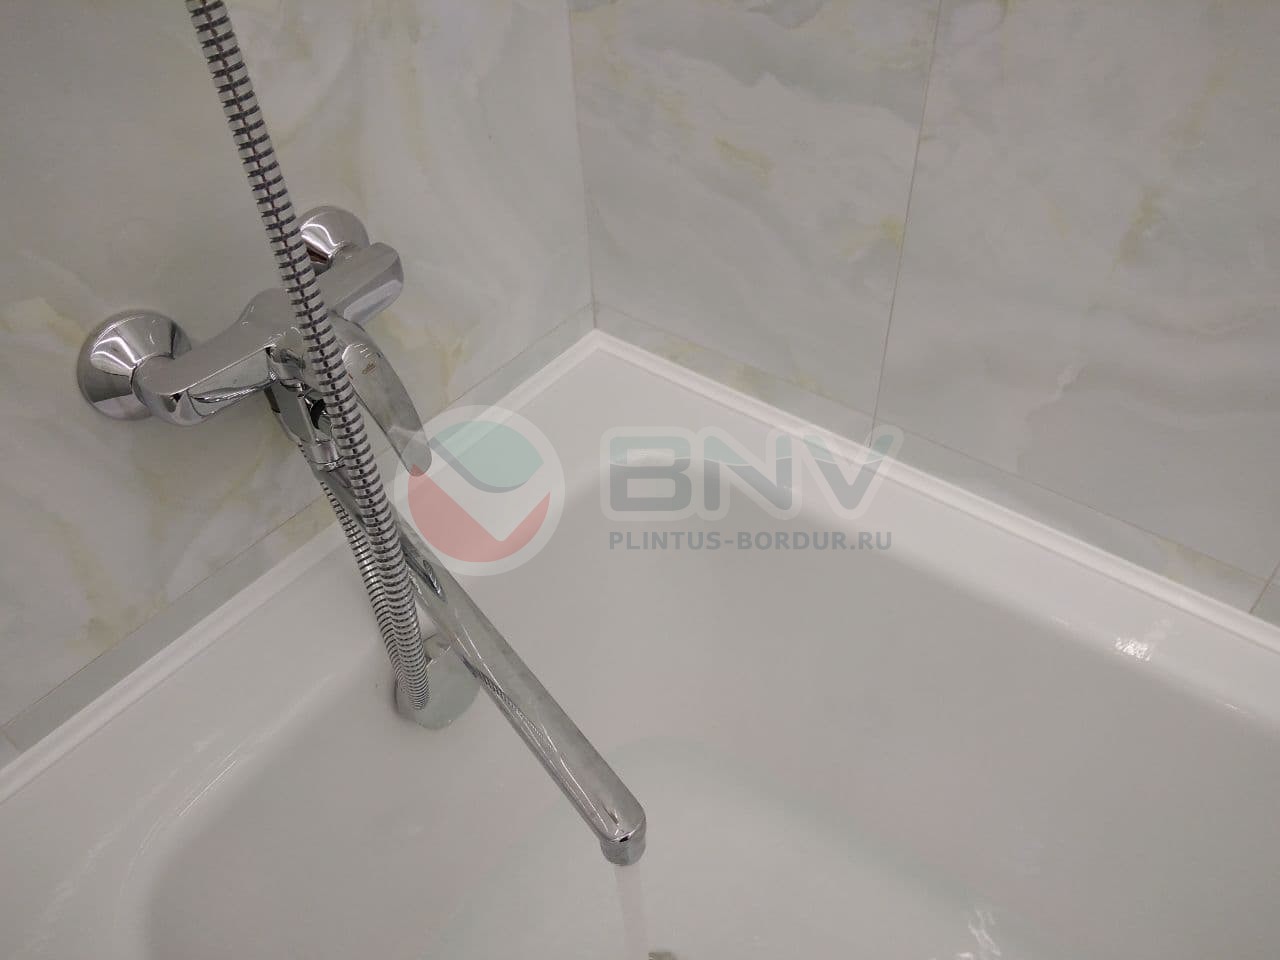 Комплект акриловых бордюров для ванной (3 шт) ГЛ12 интернет-магазин BNV